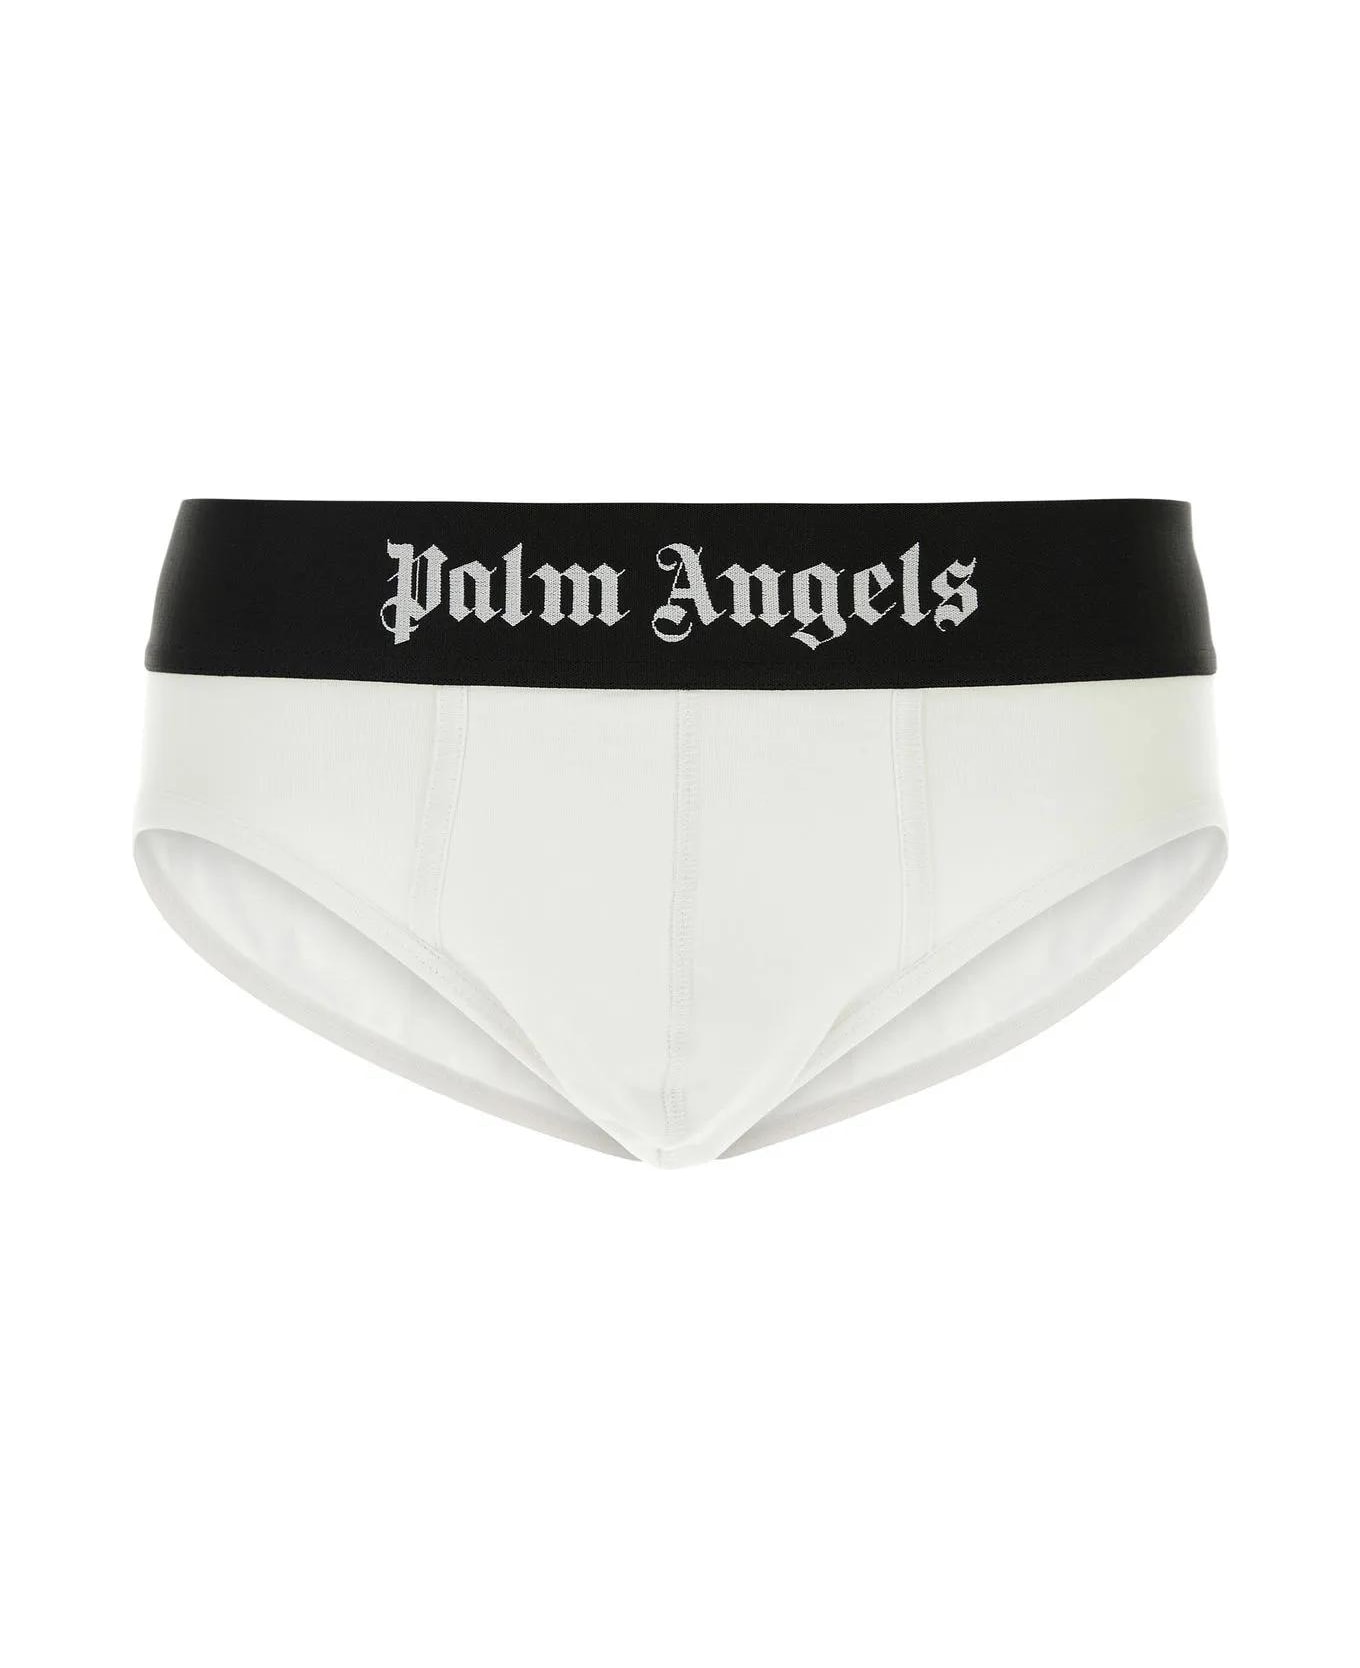 Palm Angels White Stretch Cotton Brief Set - White